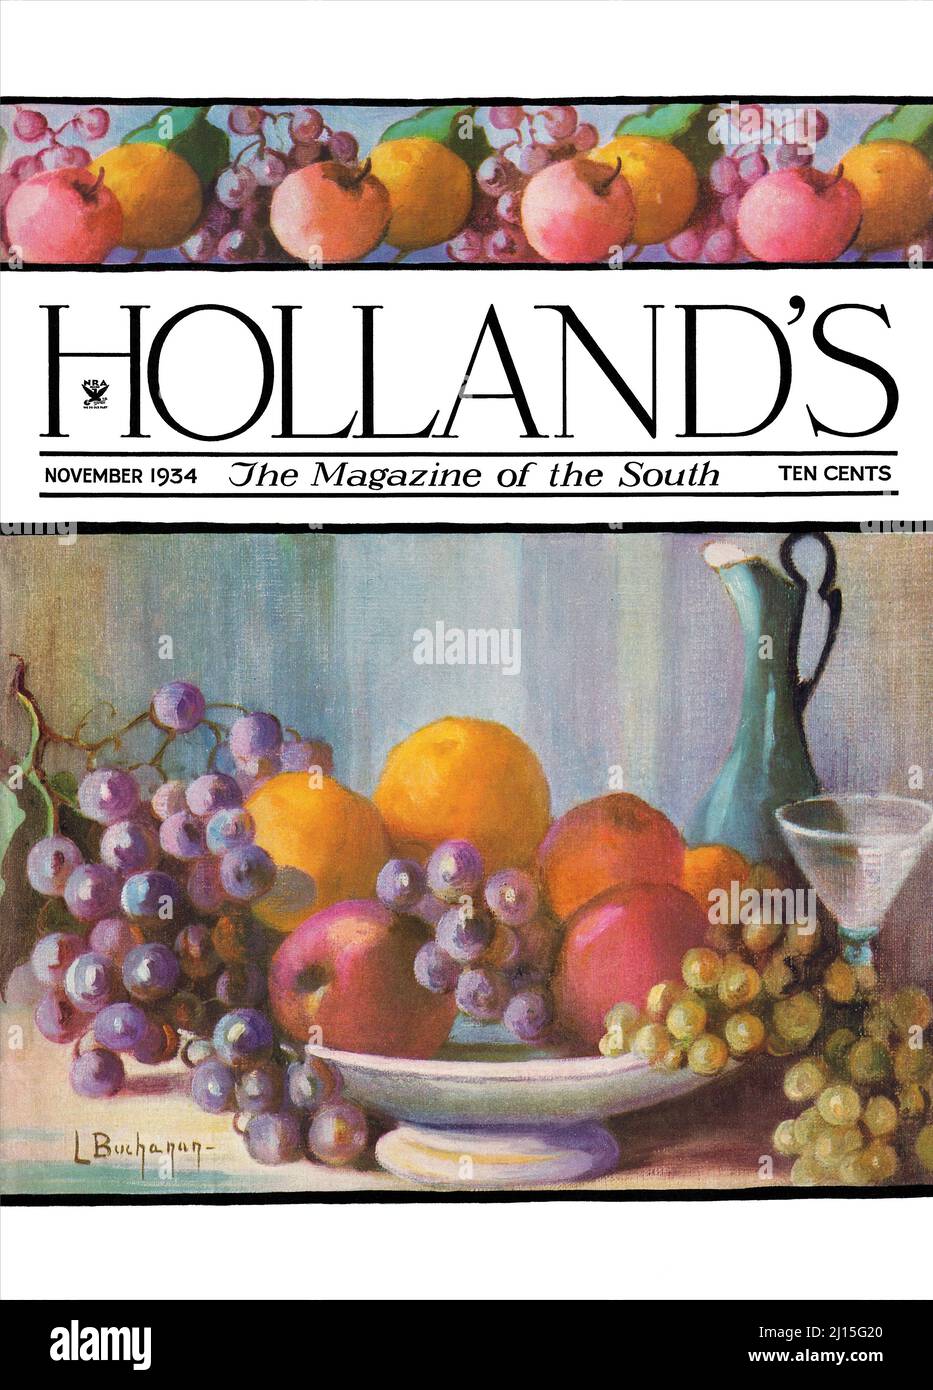 Couverture avant vintage du magazine Holland pour novembre 1934. Illustrée par Laura Buchanan. Banque D'Images